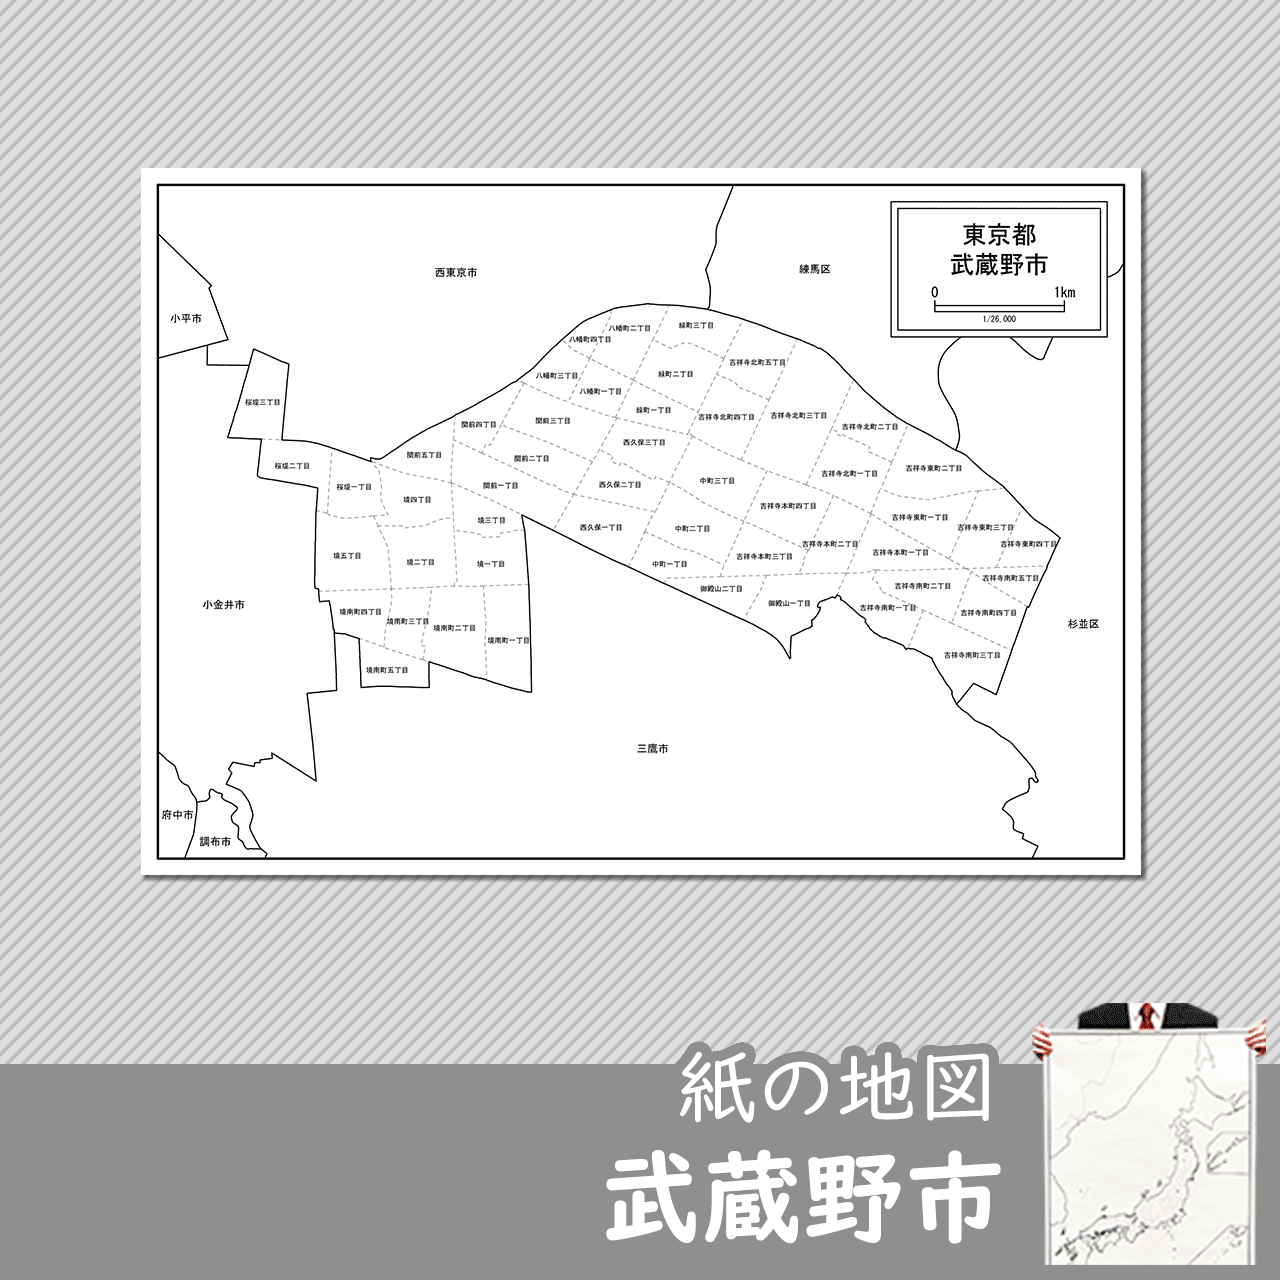 武蔵野市の紙の白地図のサムネイル